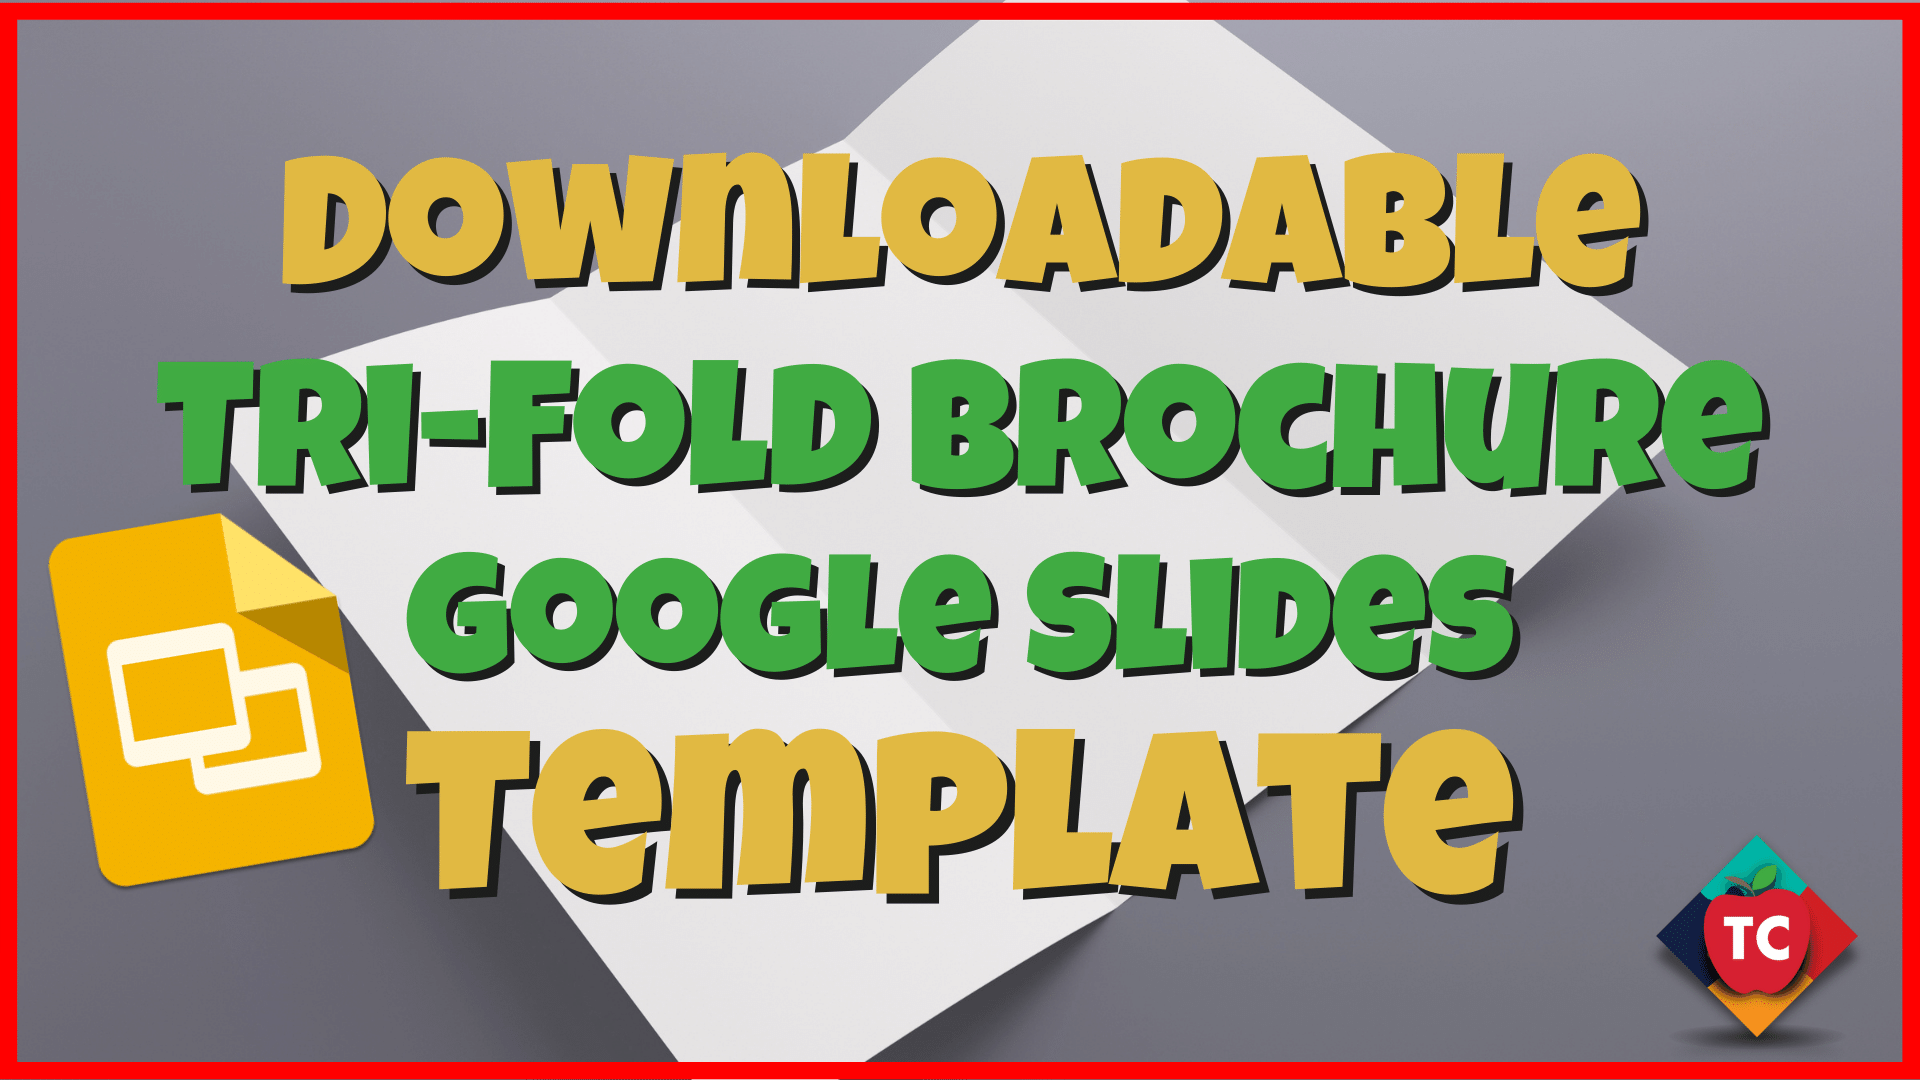 Downloadable Tri-Fold Brochure Google Slides Template Pop-up